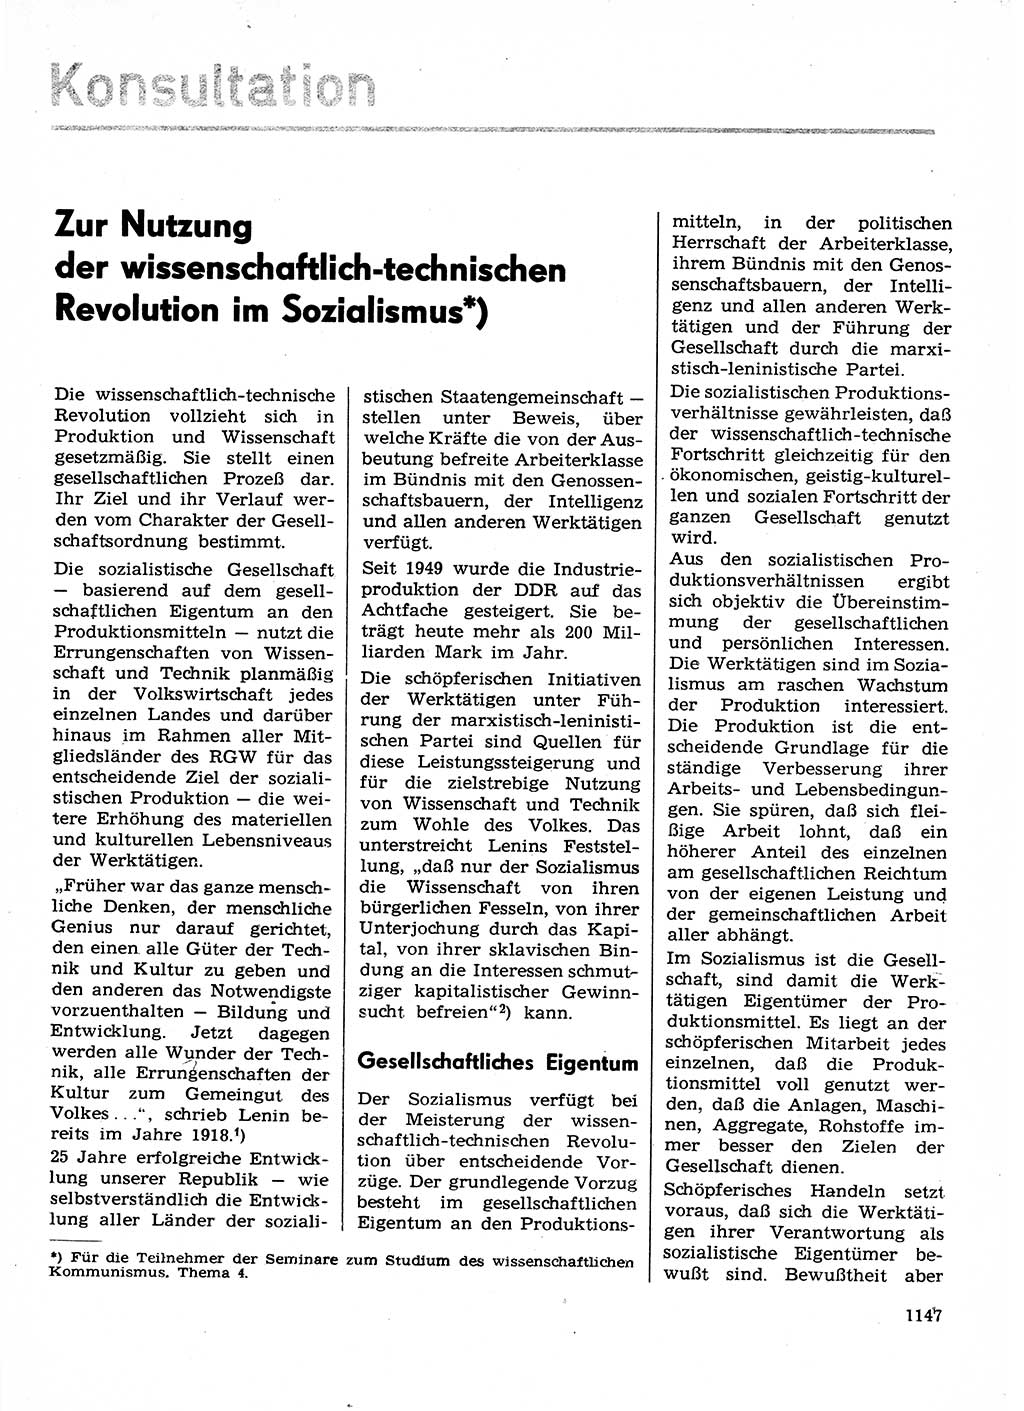 Neuer Weg (NW), Organ des Zentralkomitees (ZK) der SED (Sozialistische Einheitspartei Deutschlands) für Fragen des Parteilebens, 29. Jahrgang [Deutsche Demokratische Republik (DDR)] 1974, Seite 1147 (NW ZK SED DDR 1974, S. 1147)